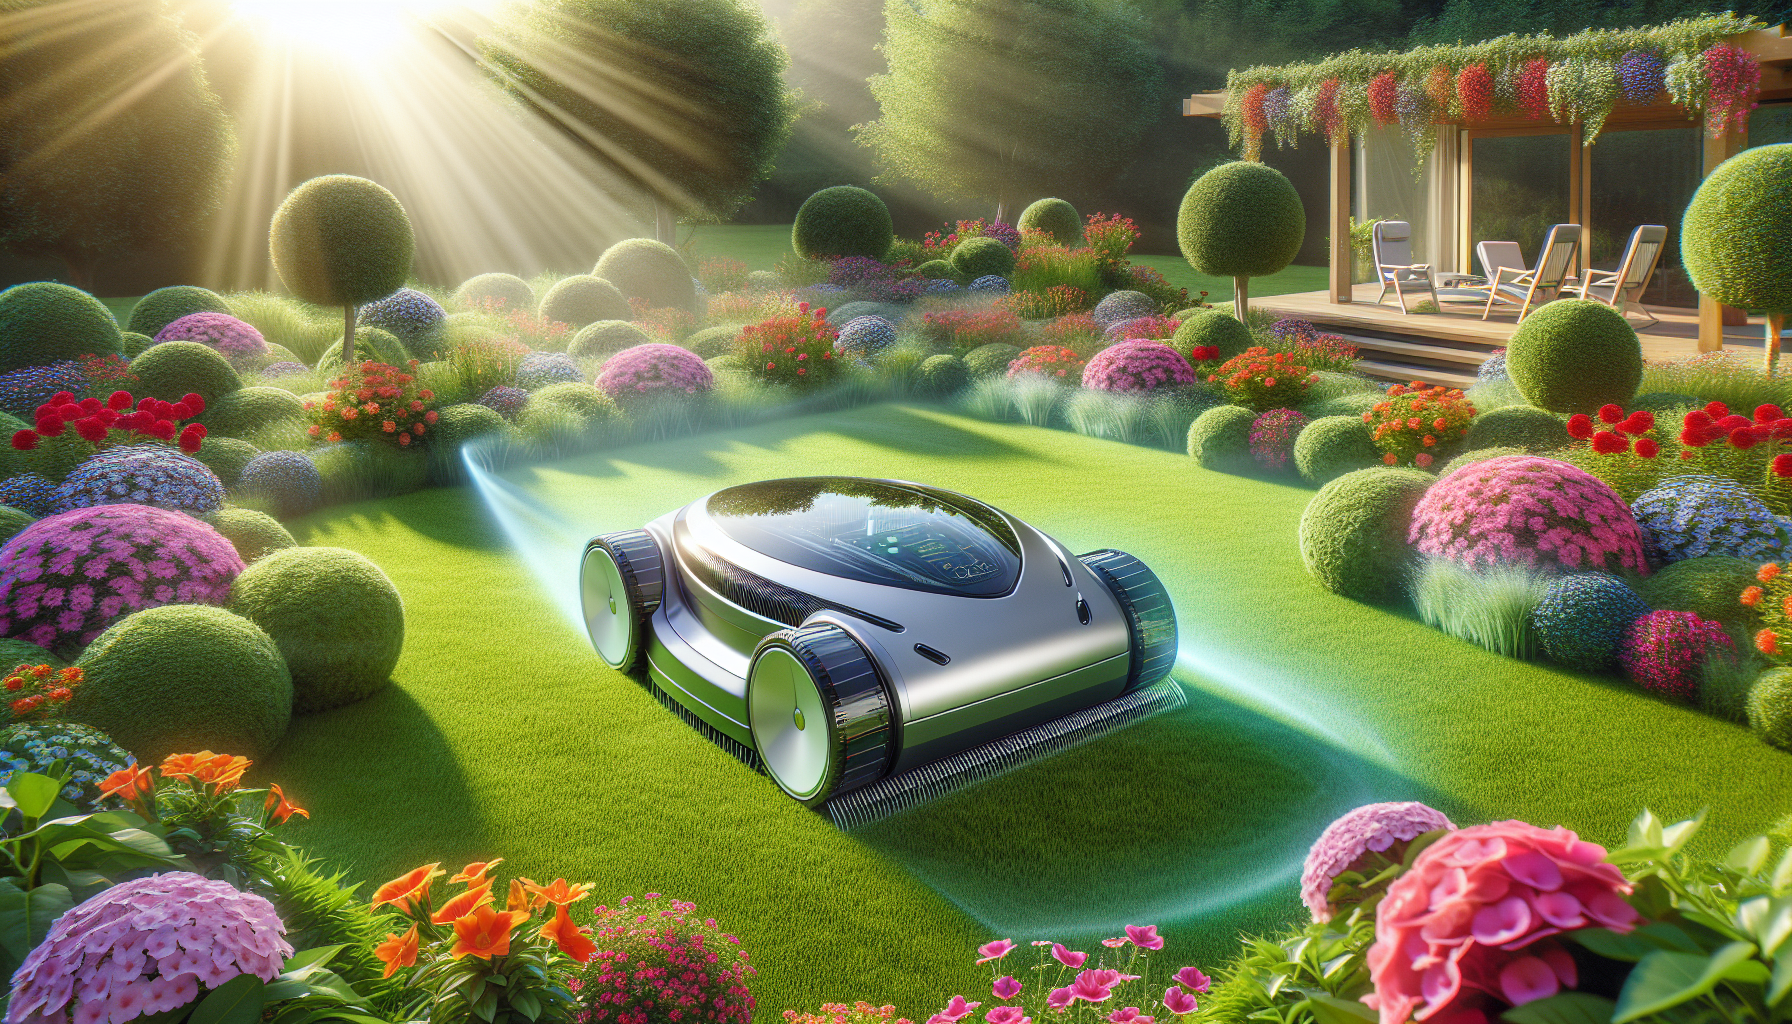 découvrez la tondeuse robot honda, la révolution de l'entretien de jardin qui rendra votre pelouse impeccable et vous fera gagner du temps pour en profiter pleinement.